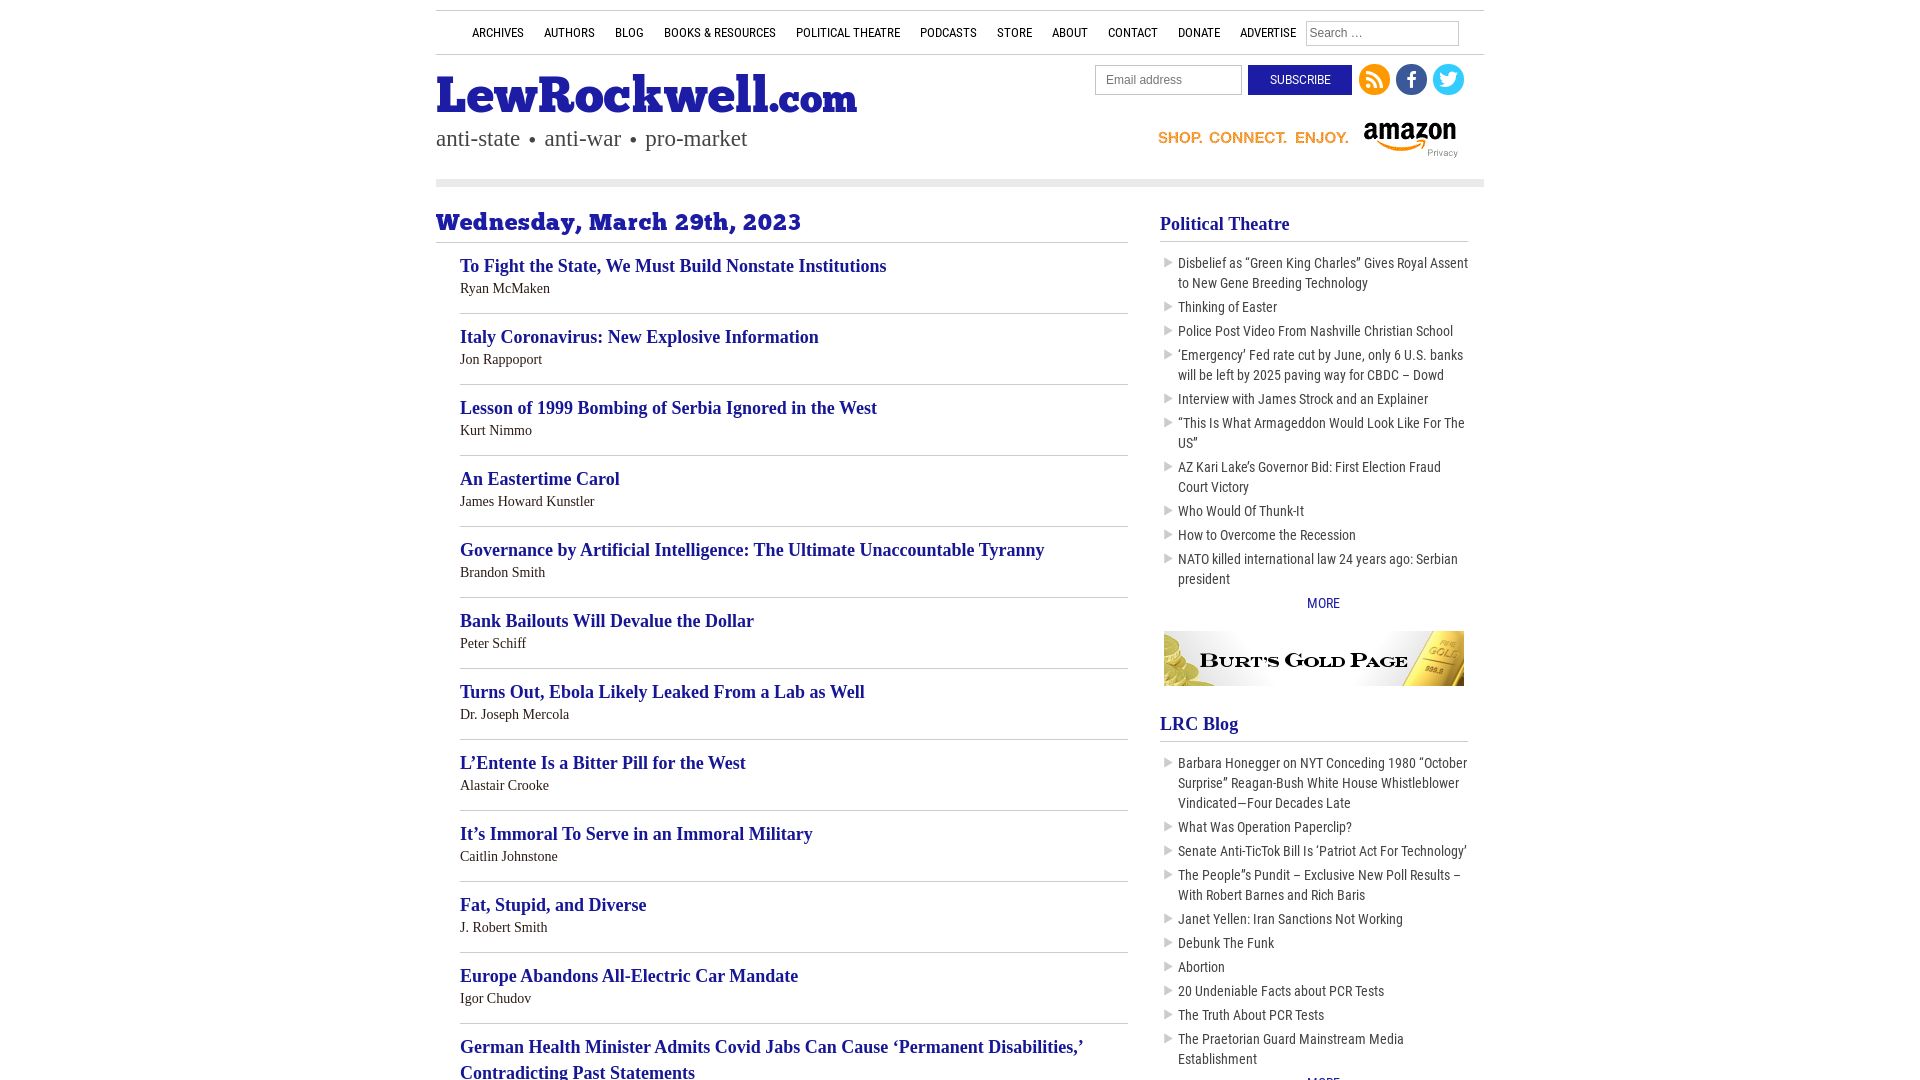 État du site web lewrockwell.com est   EN LIGNE